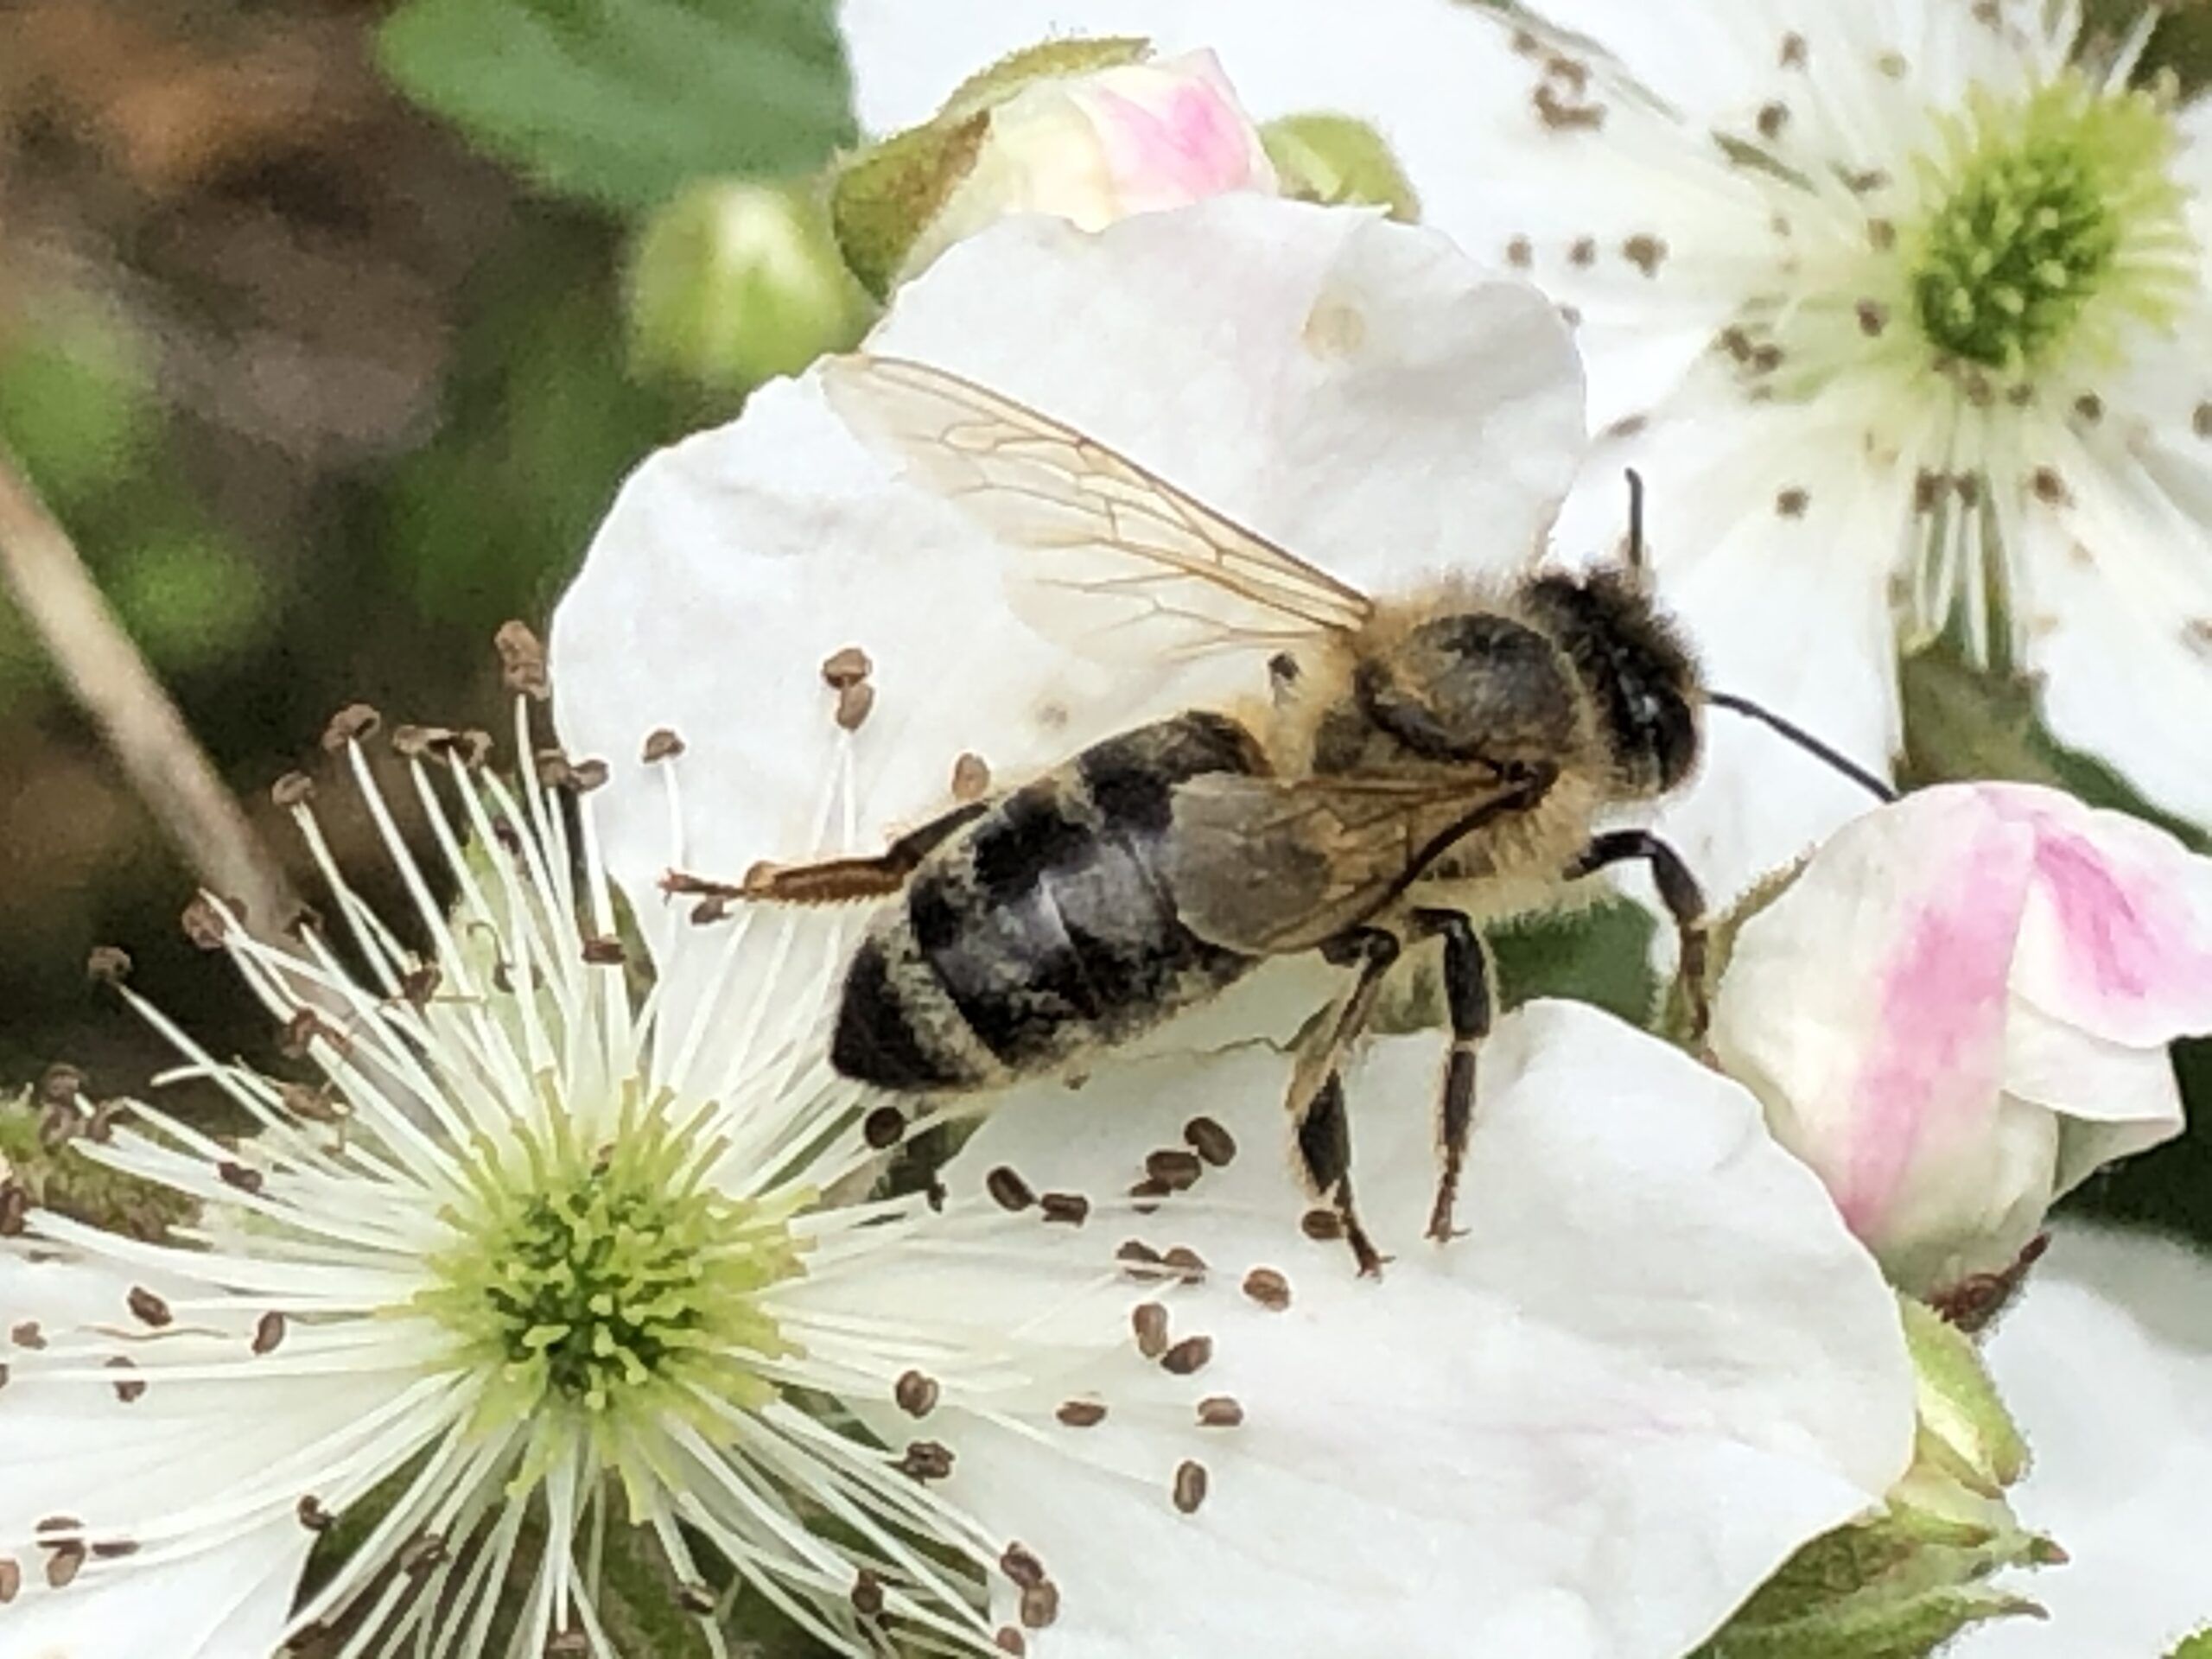 Honeybee on a white flower